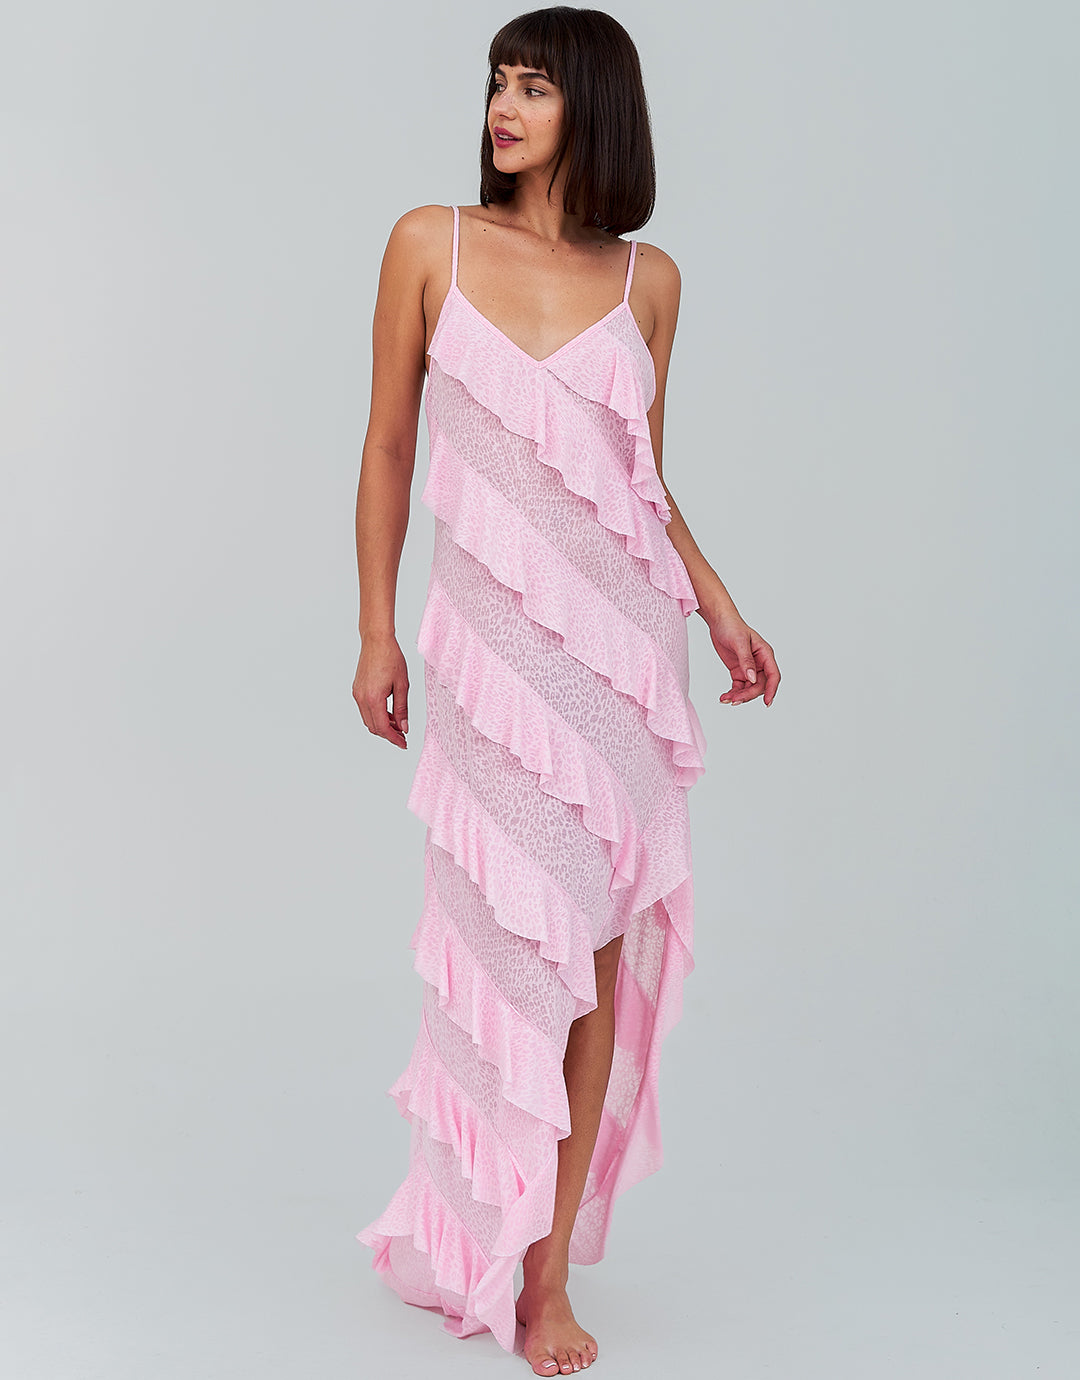 Mermaid Ruffle Dress - Light Pink - Simply Beach UK